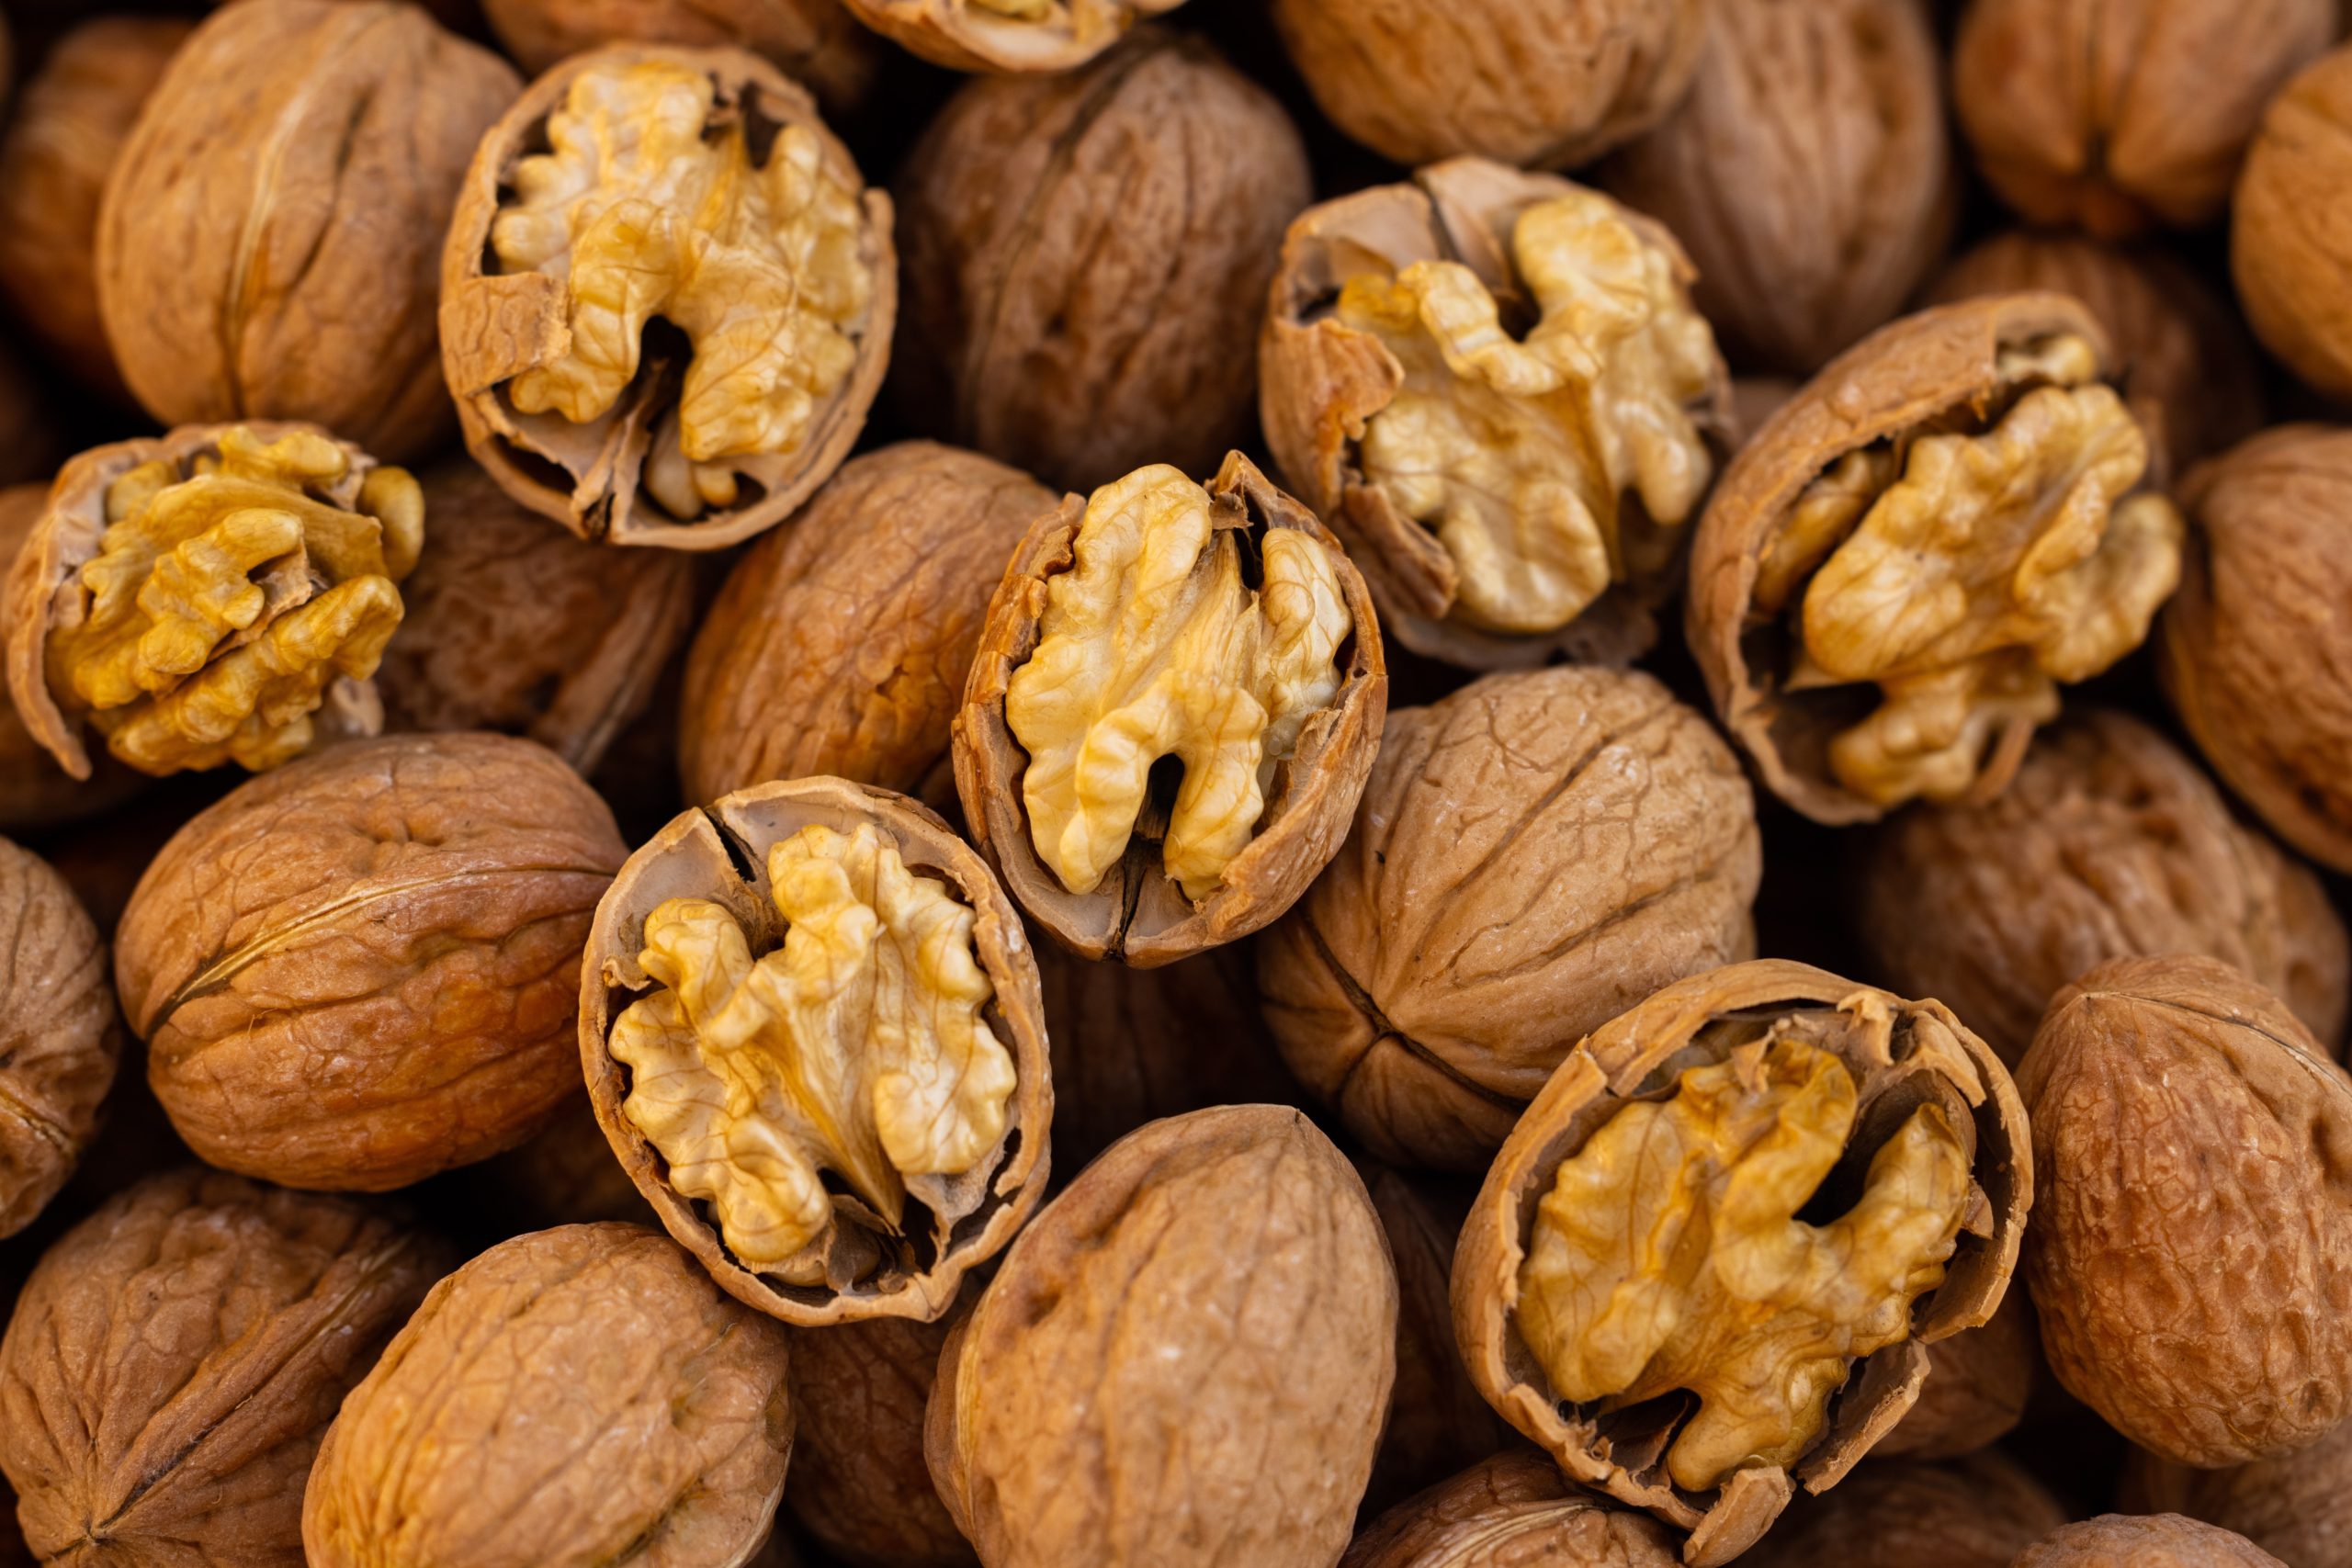 Walnuts: A worthy nut to crack